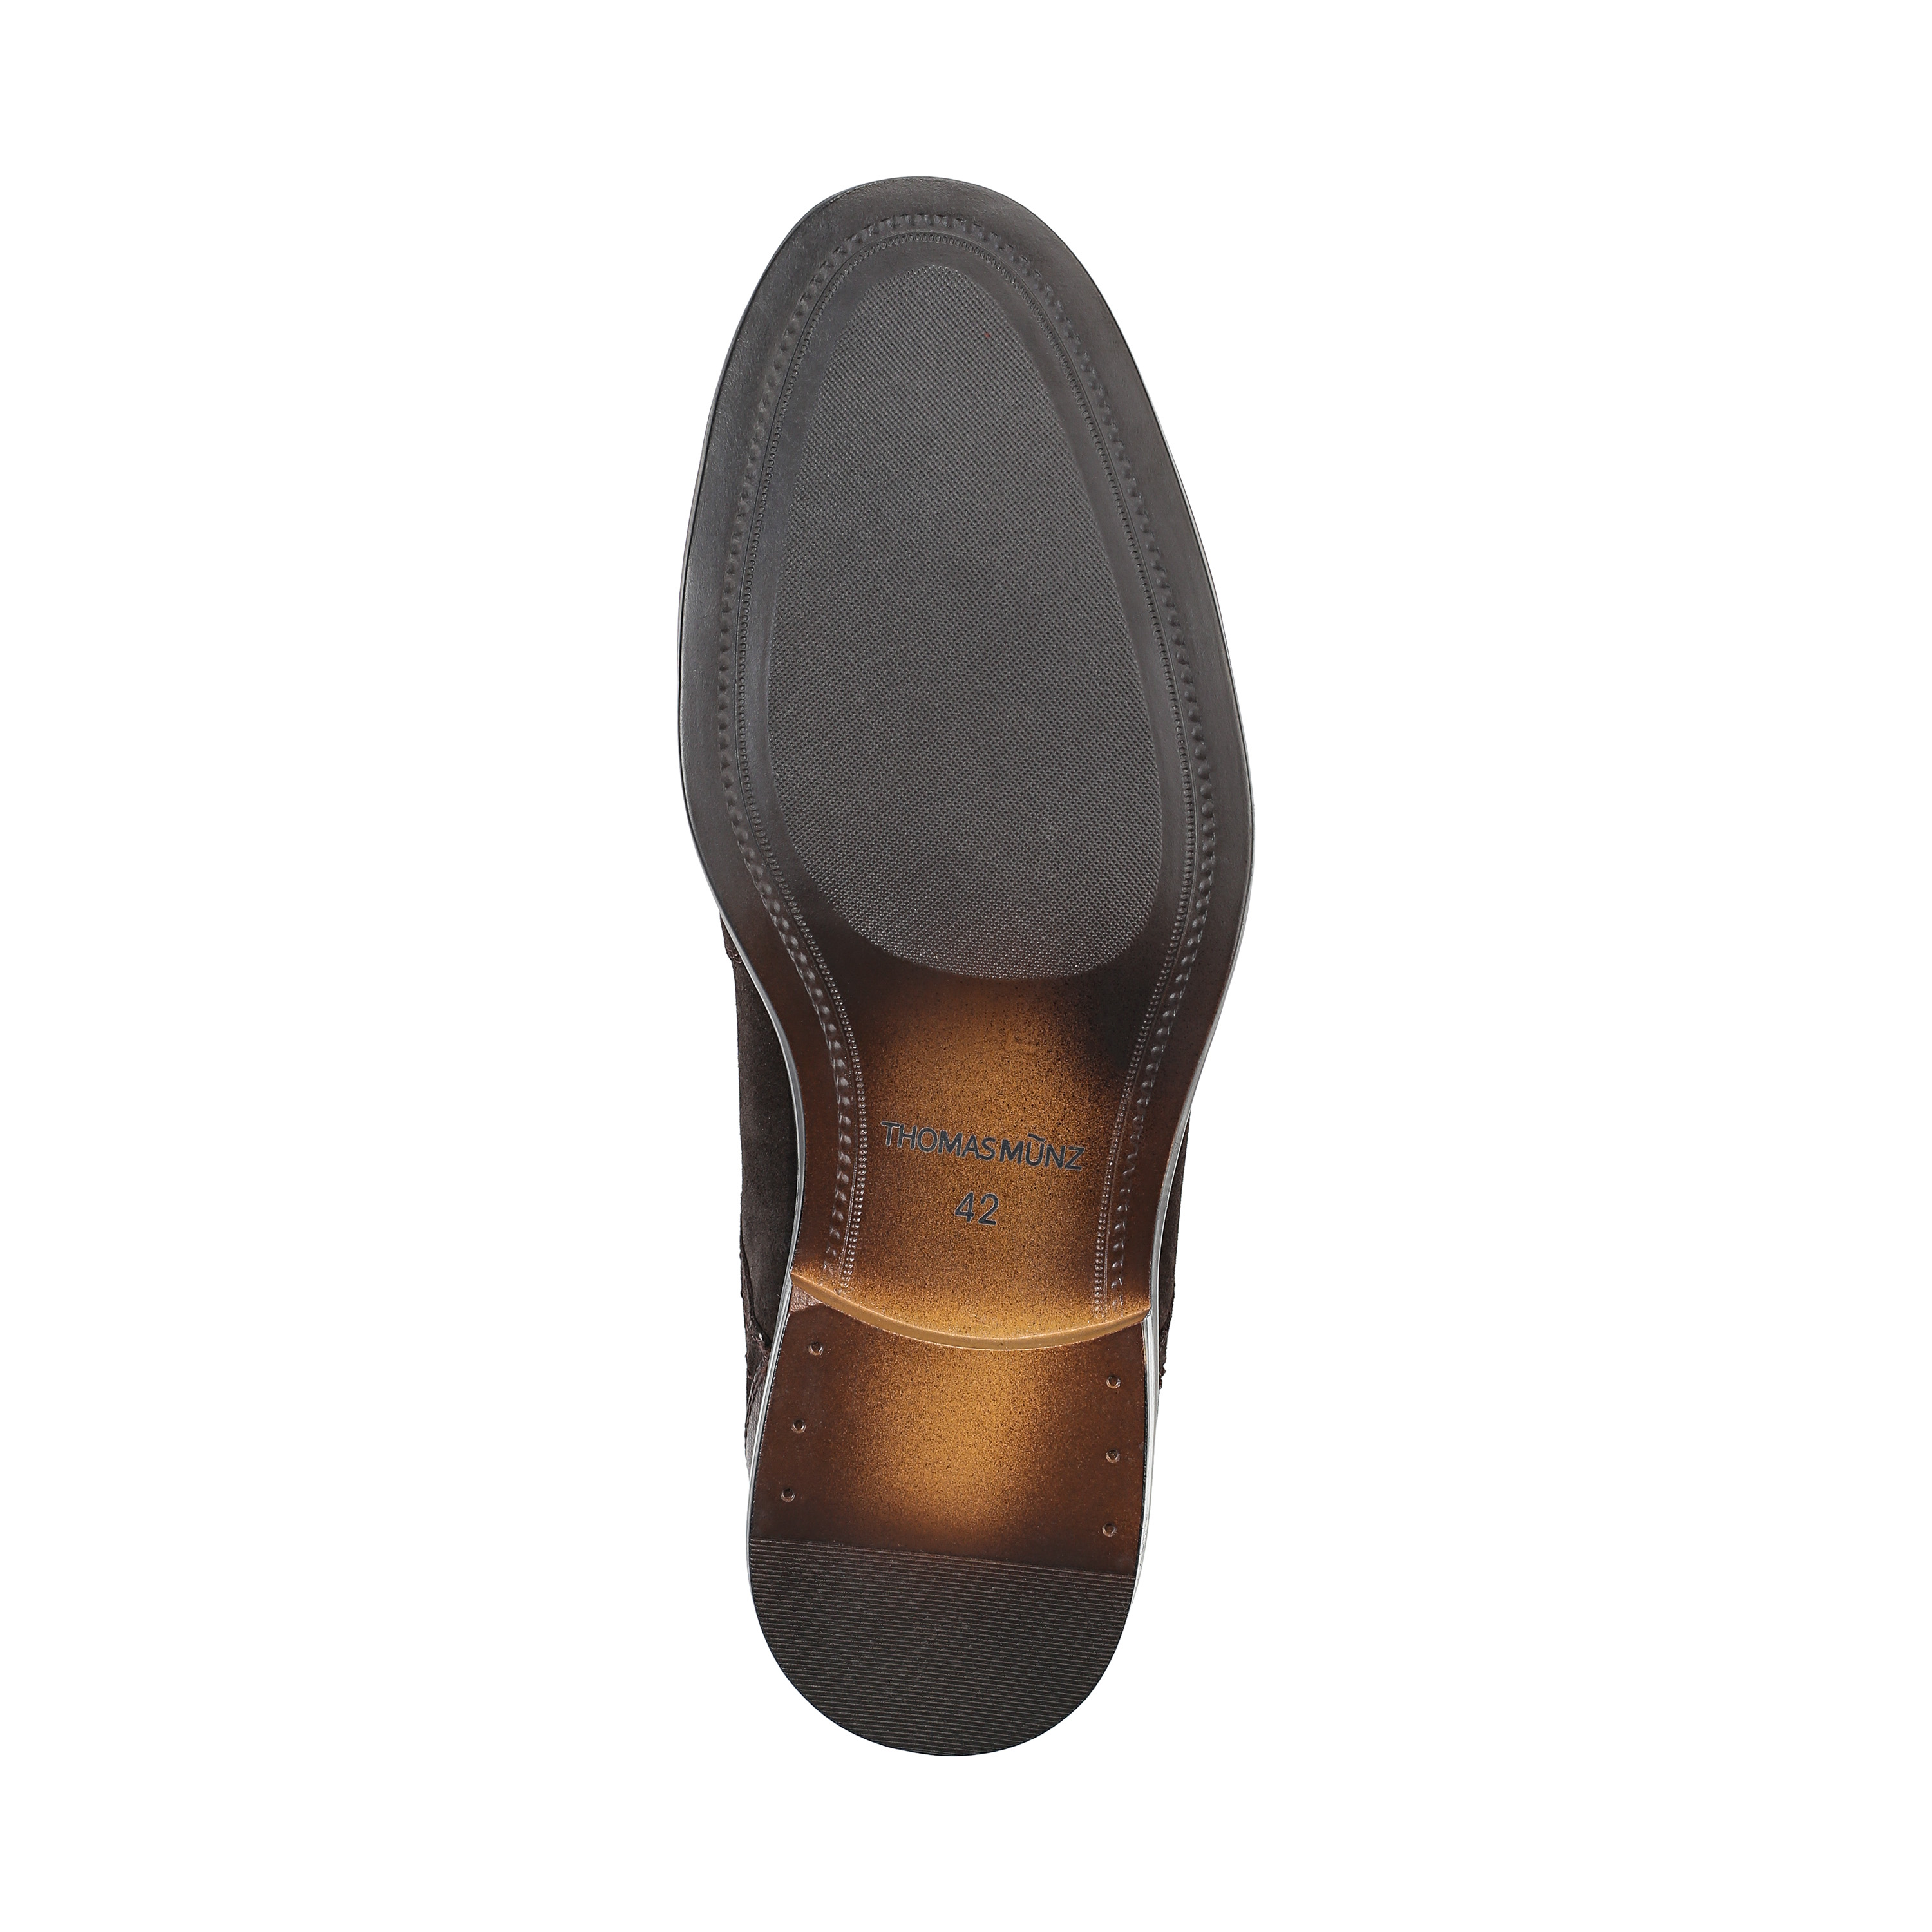 Туфли Thomas Munz 73-134C-1502, цвет коричневый, размер 44 дерби - фото 4